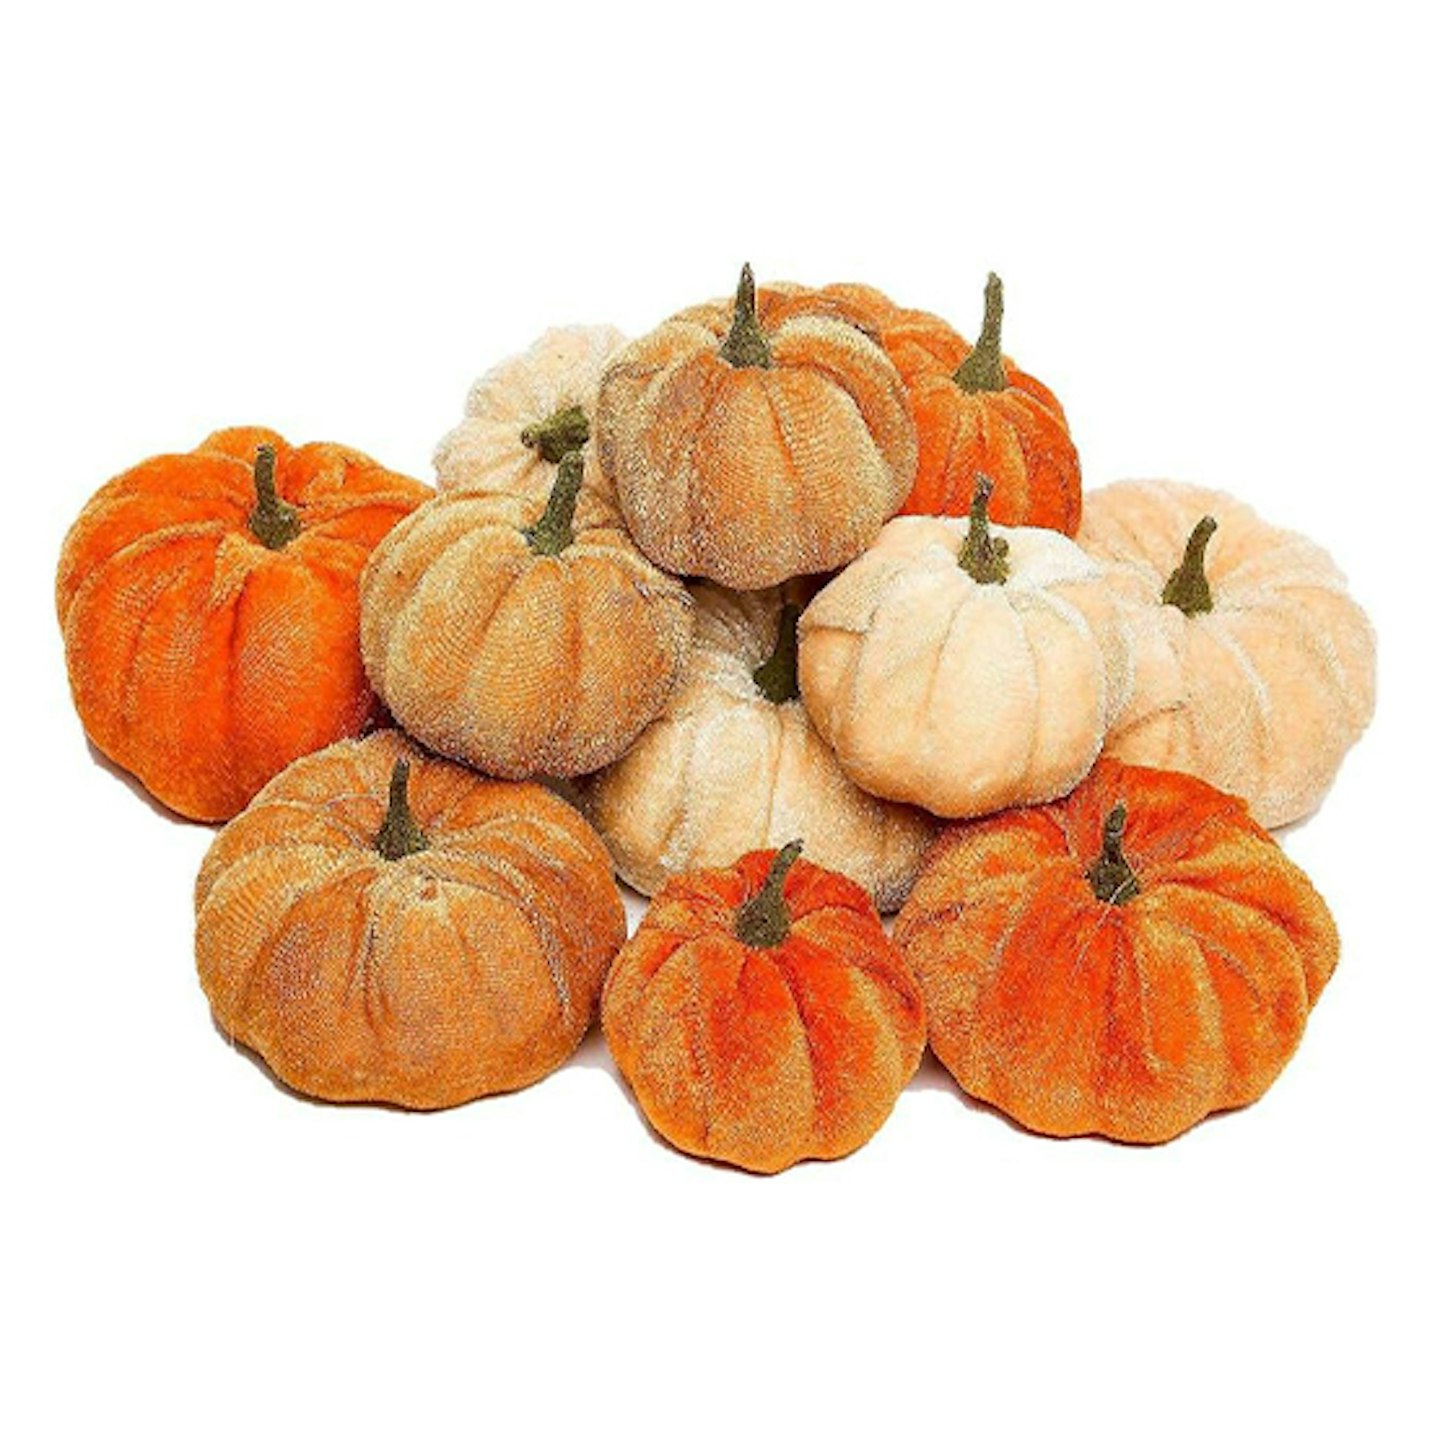 Artificial pumpkins